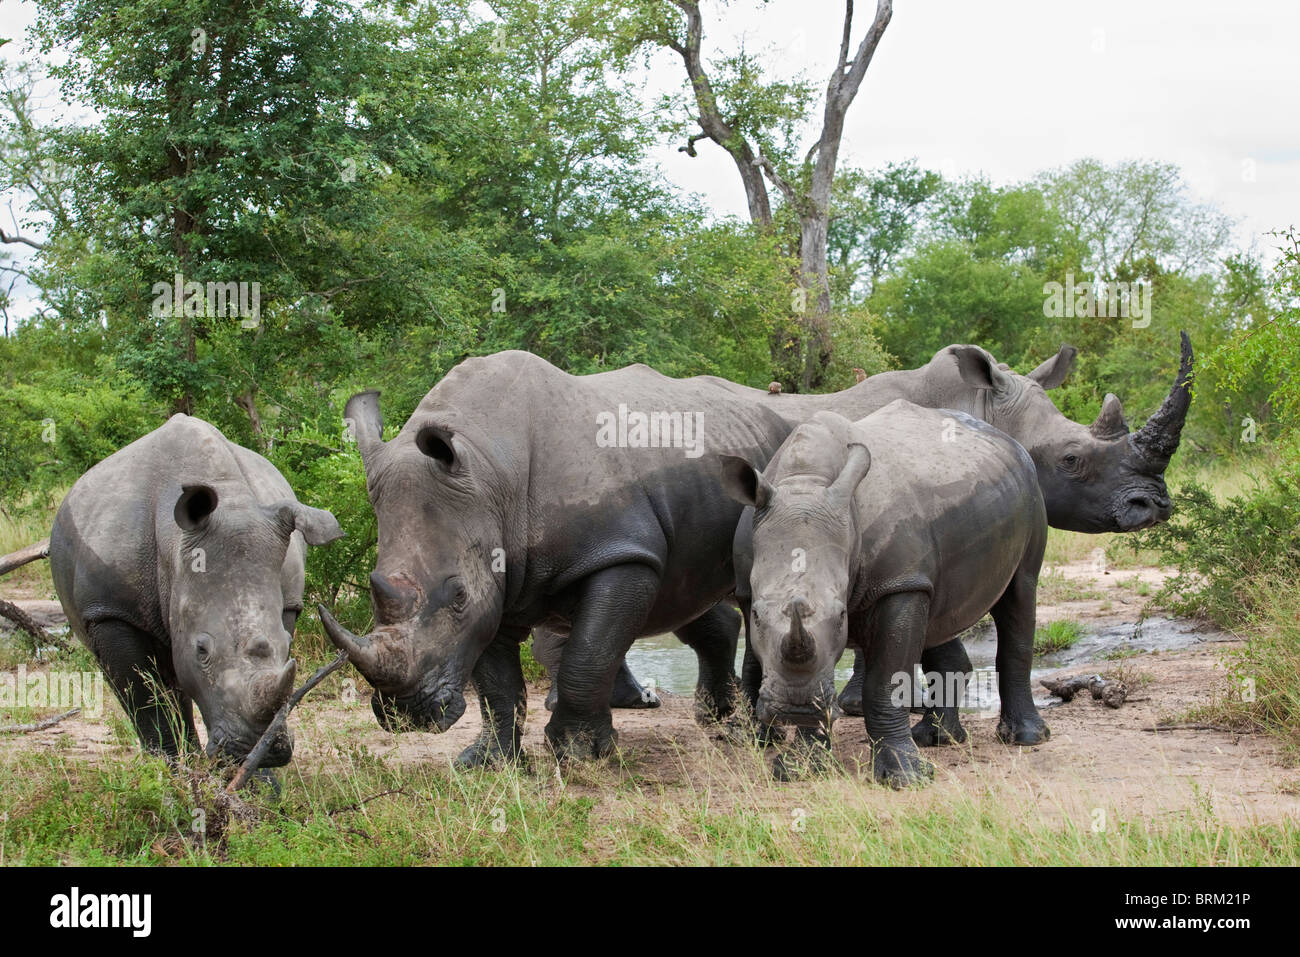 Un troupeau de rhinocéros blanc debout dans un trou d'eau près de groupe Banque D'Images